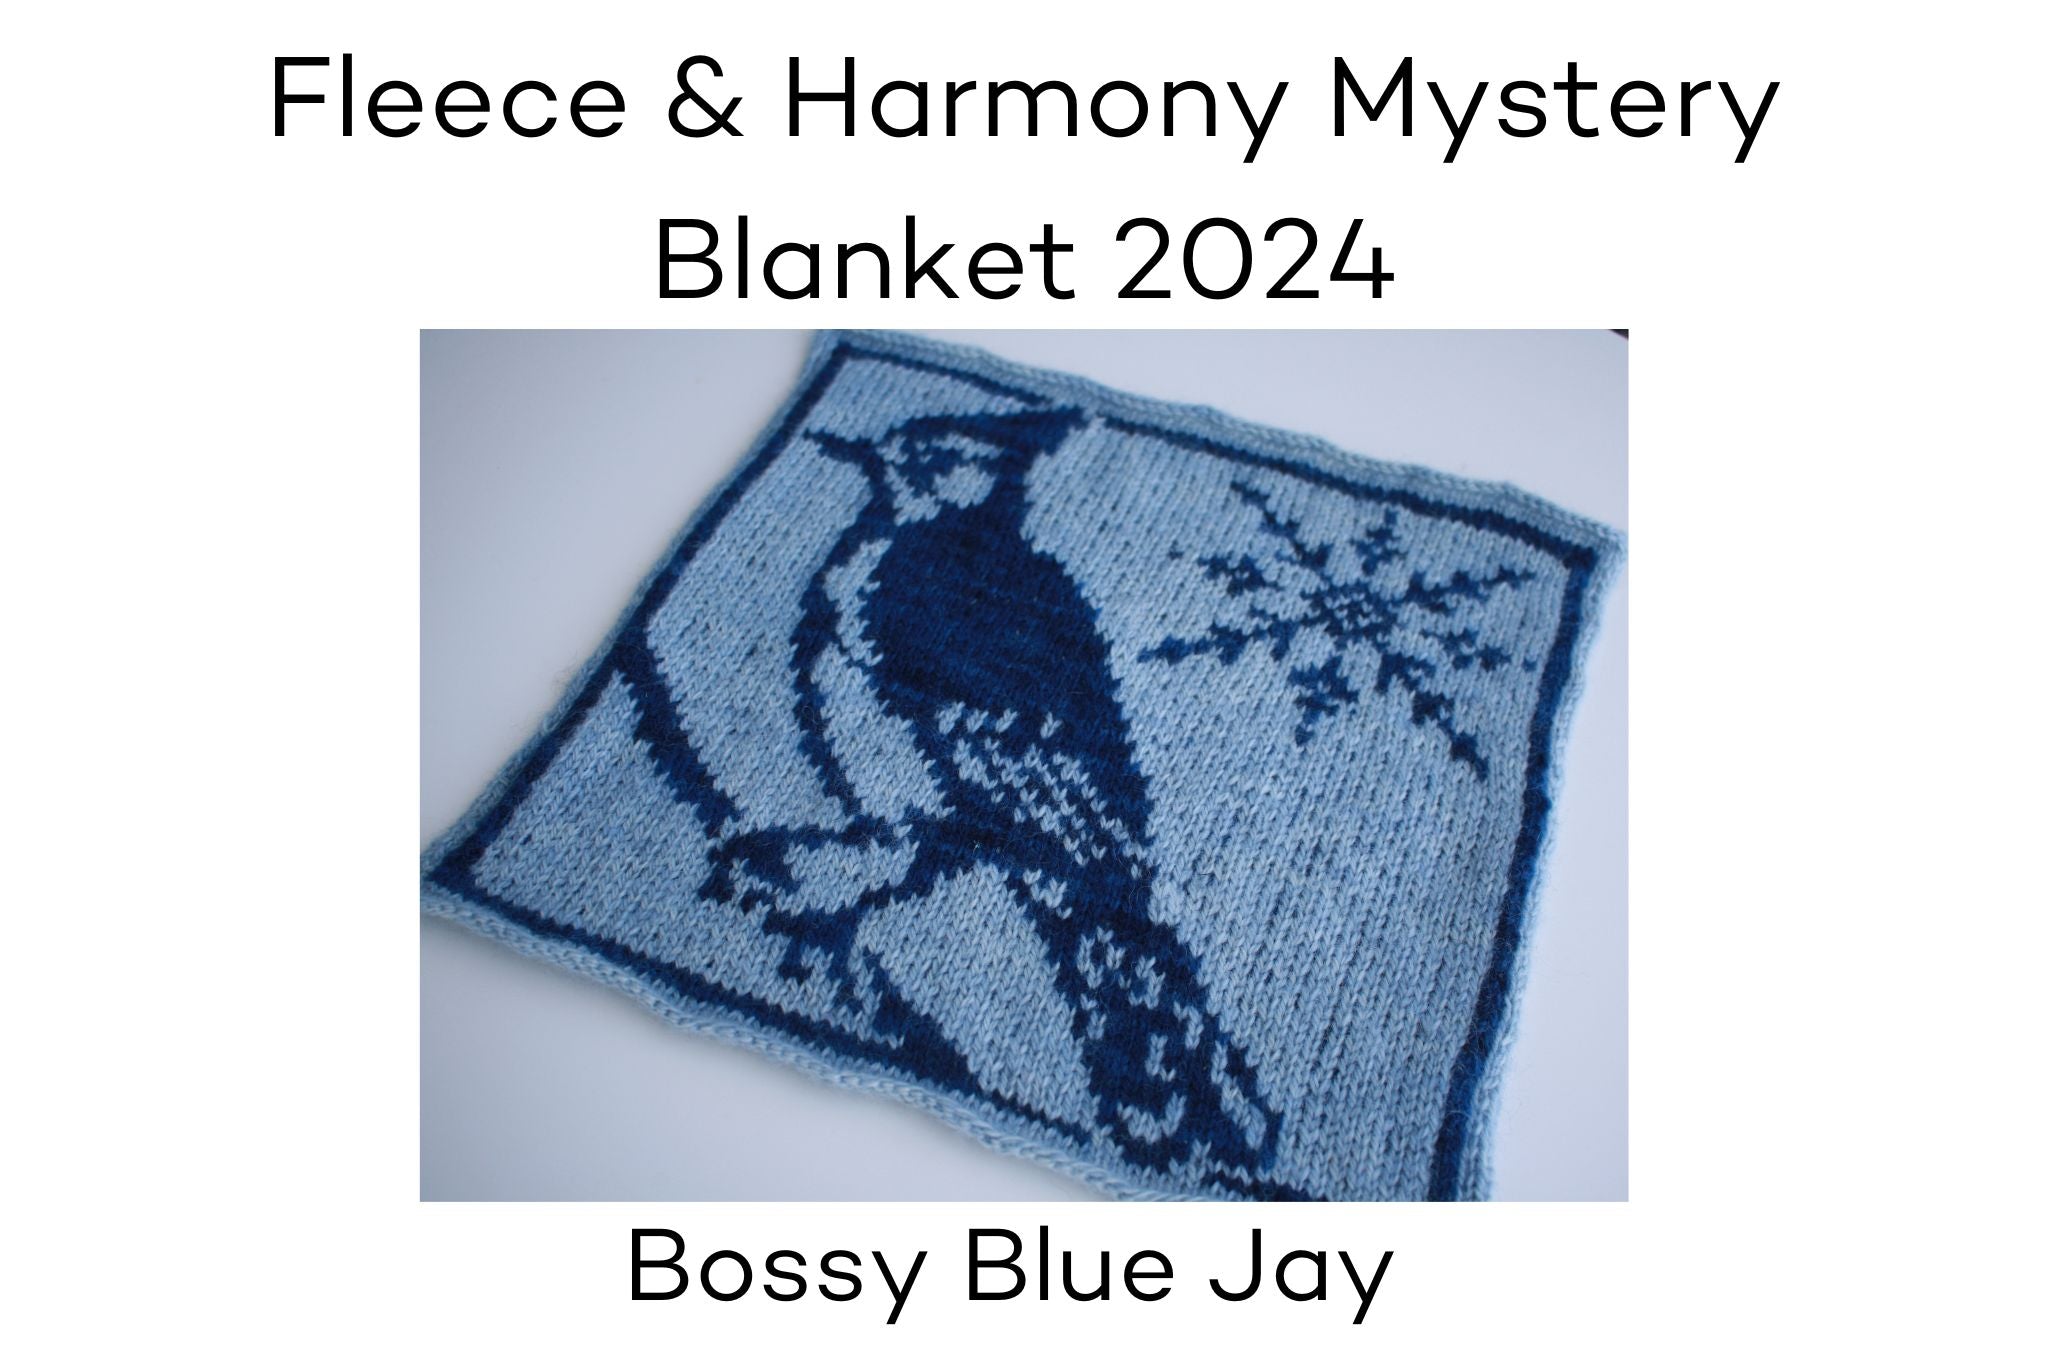 Fleece and Harmony Blanket 2024 January